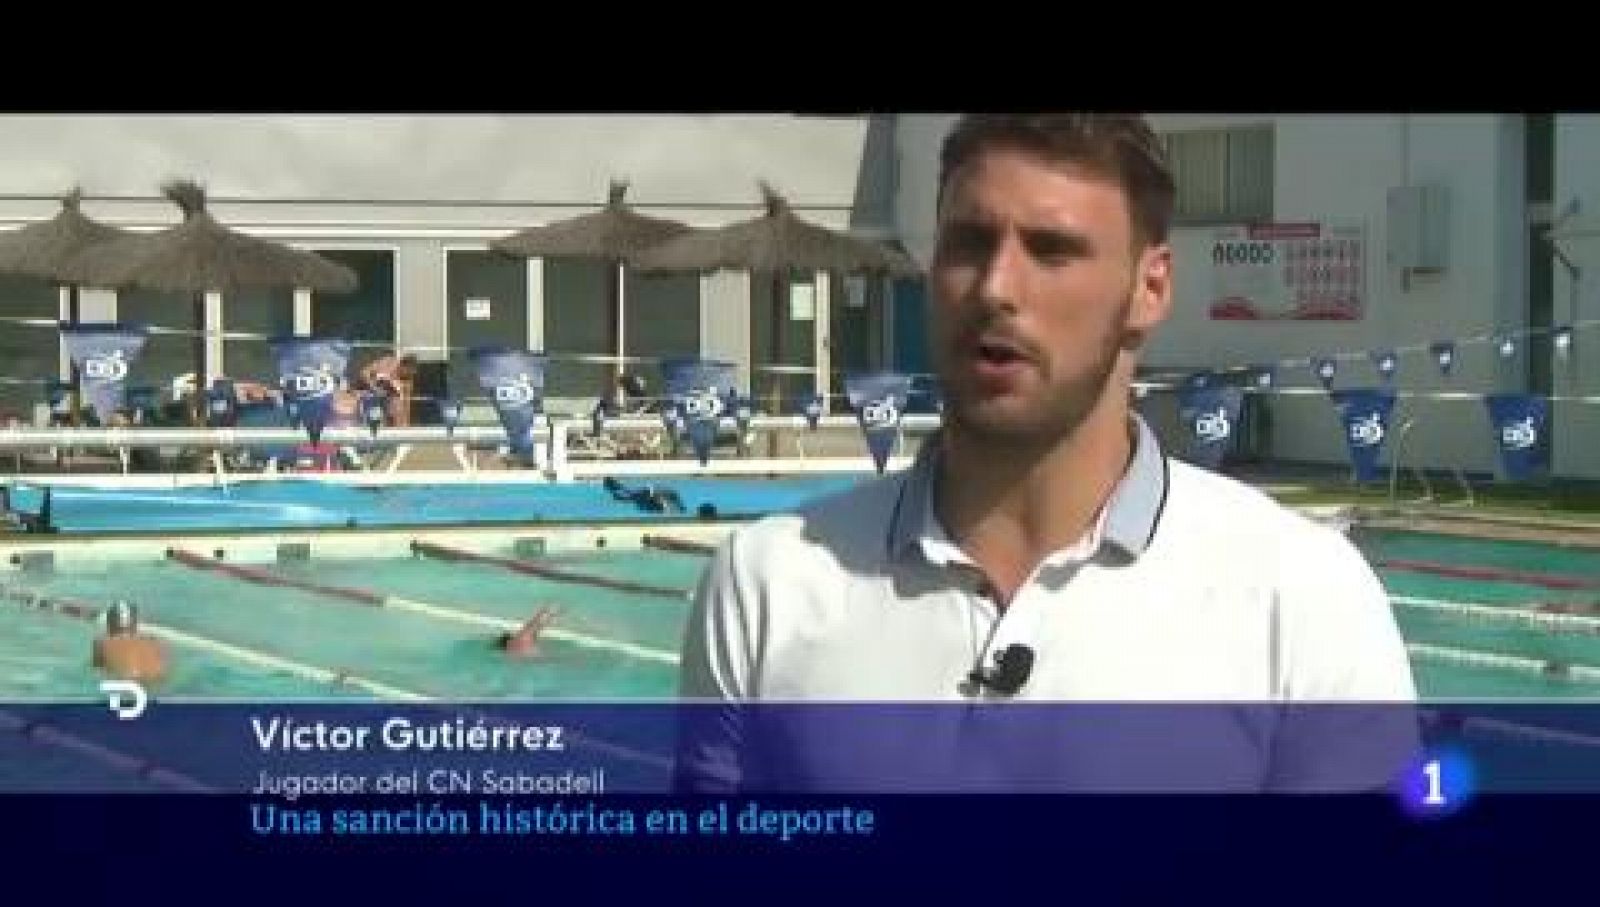 Víctor Gutiérrez: "Ya no hay barra libre con la homofobia en el deporte"